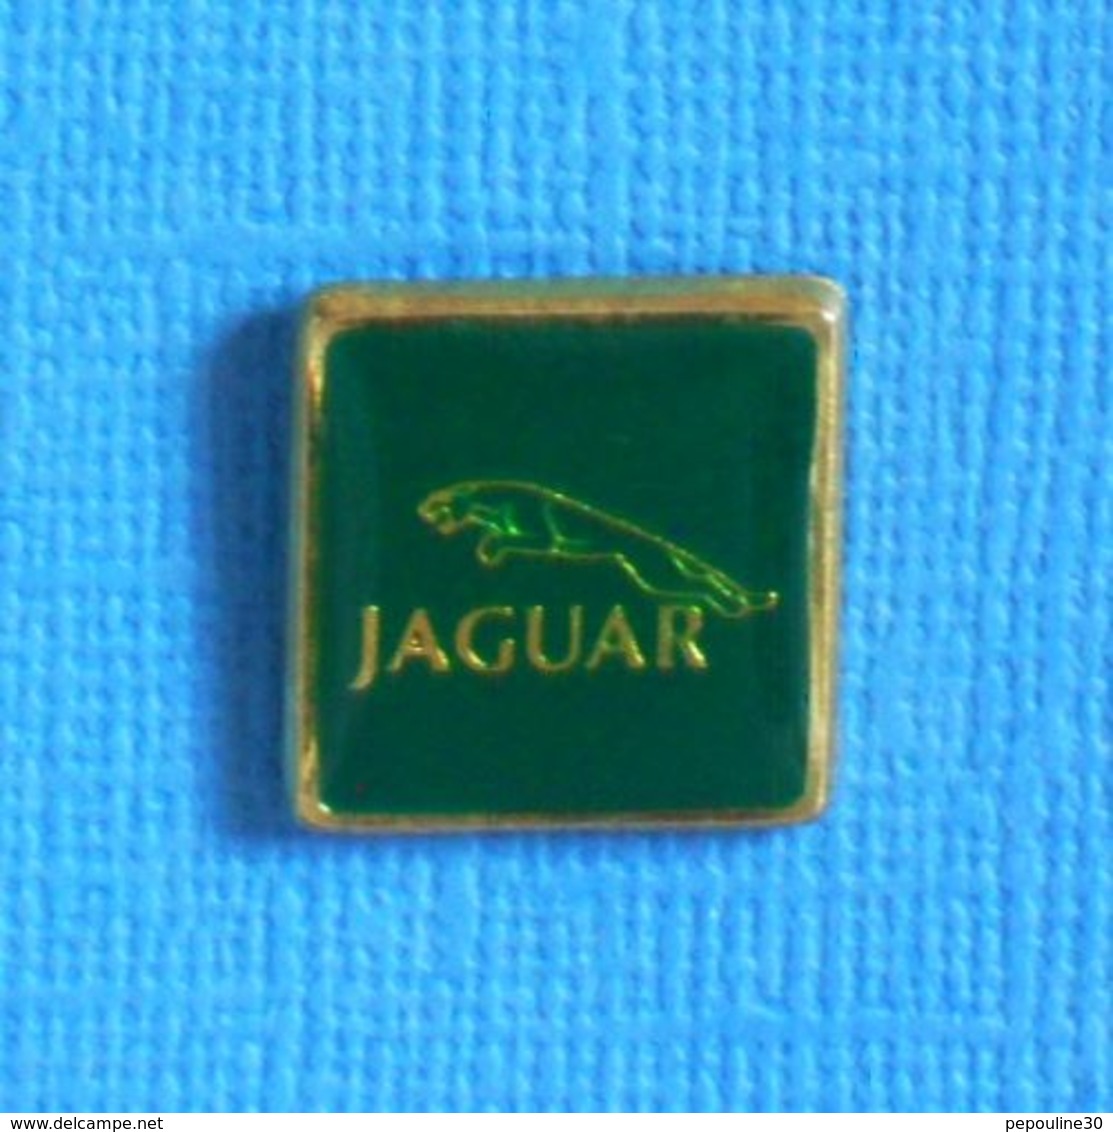 1 PIN'S //  ** LOGO / JAGUAR / EMBLÈME - JAGUAR BONDISSANT ** - Jaguar